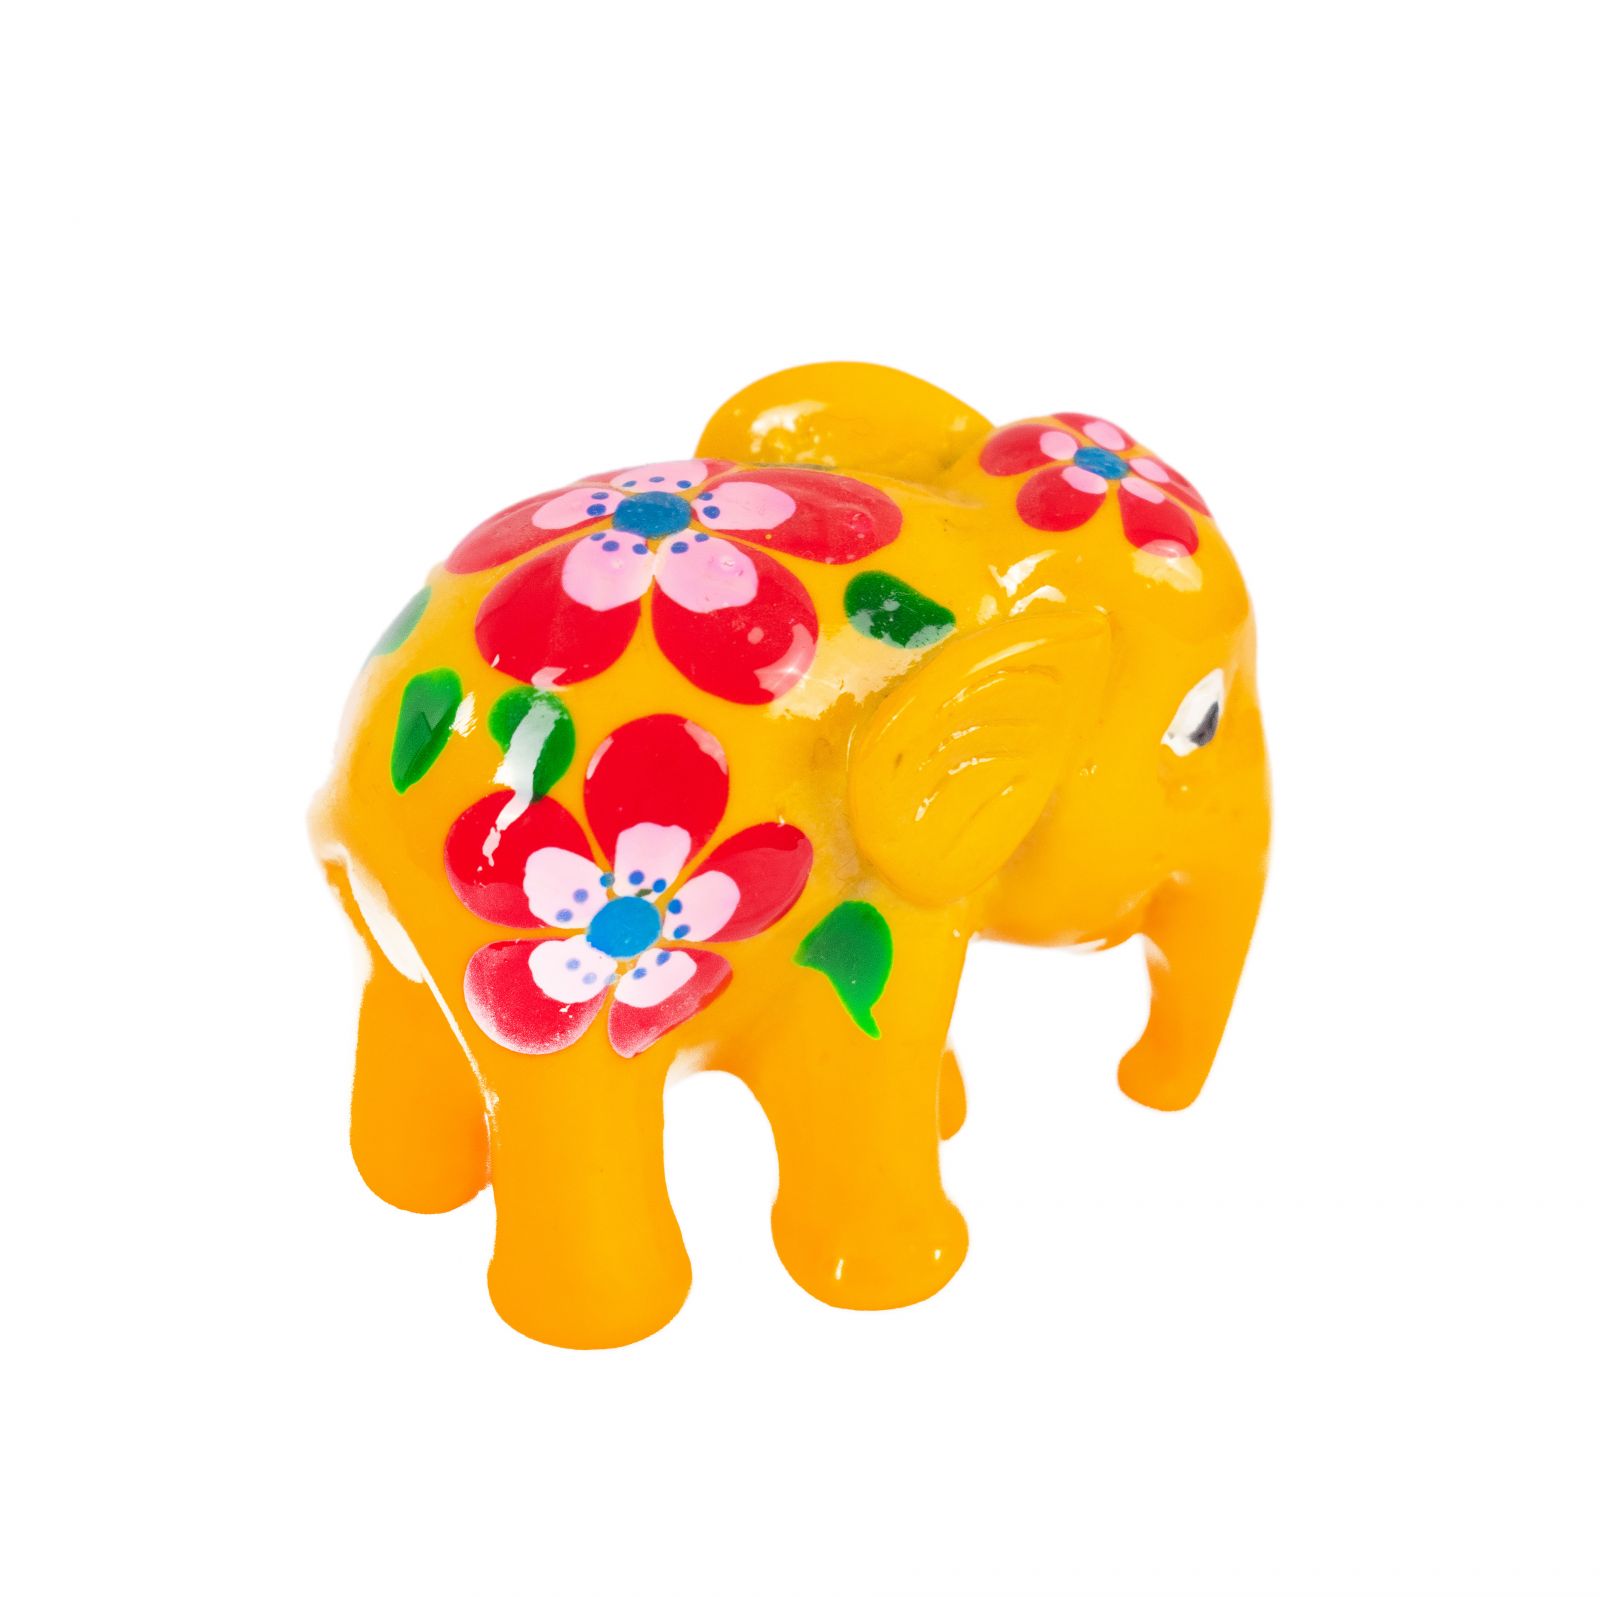 Ručně malovaný slon Kuping Serbuk Thailand